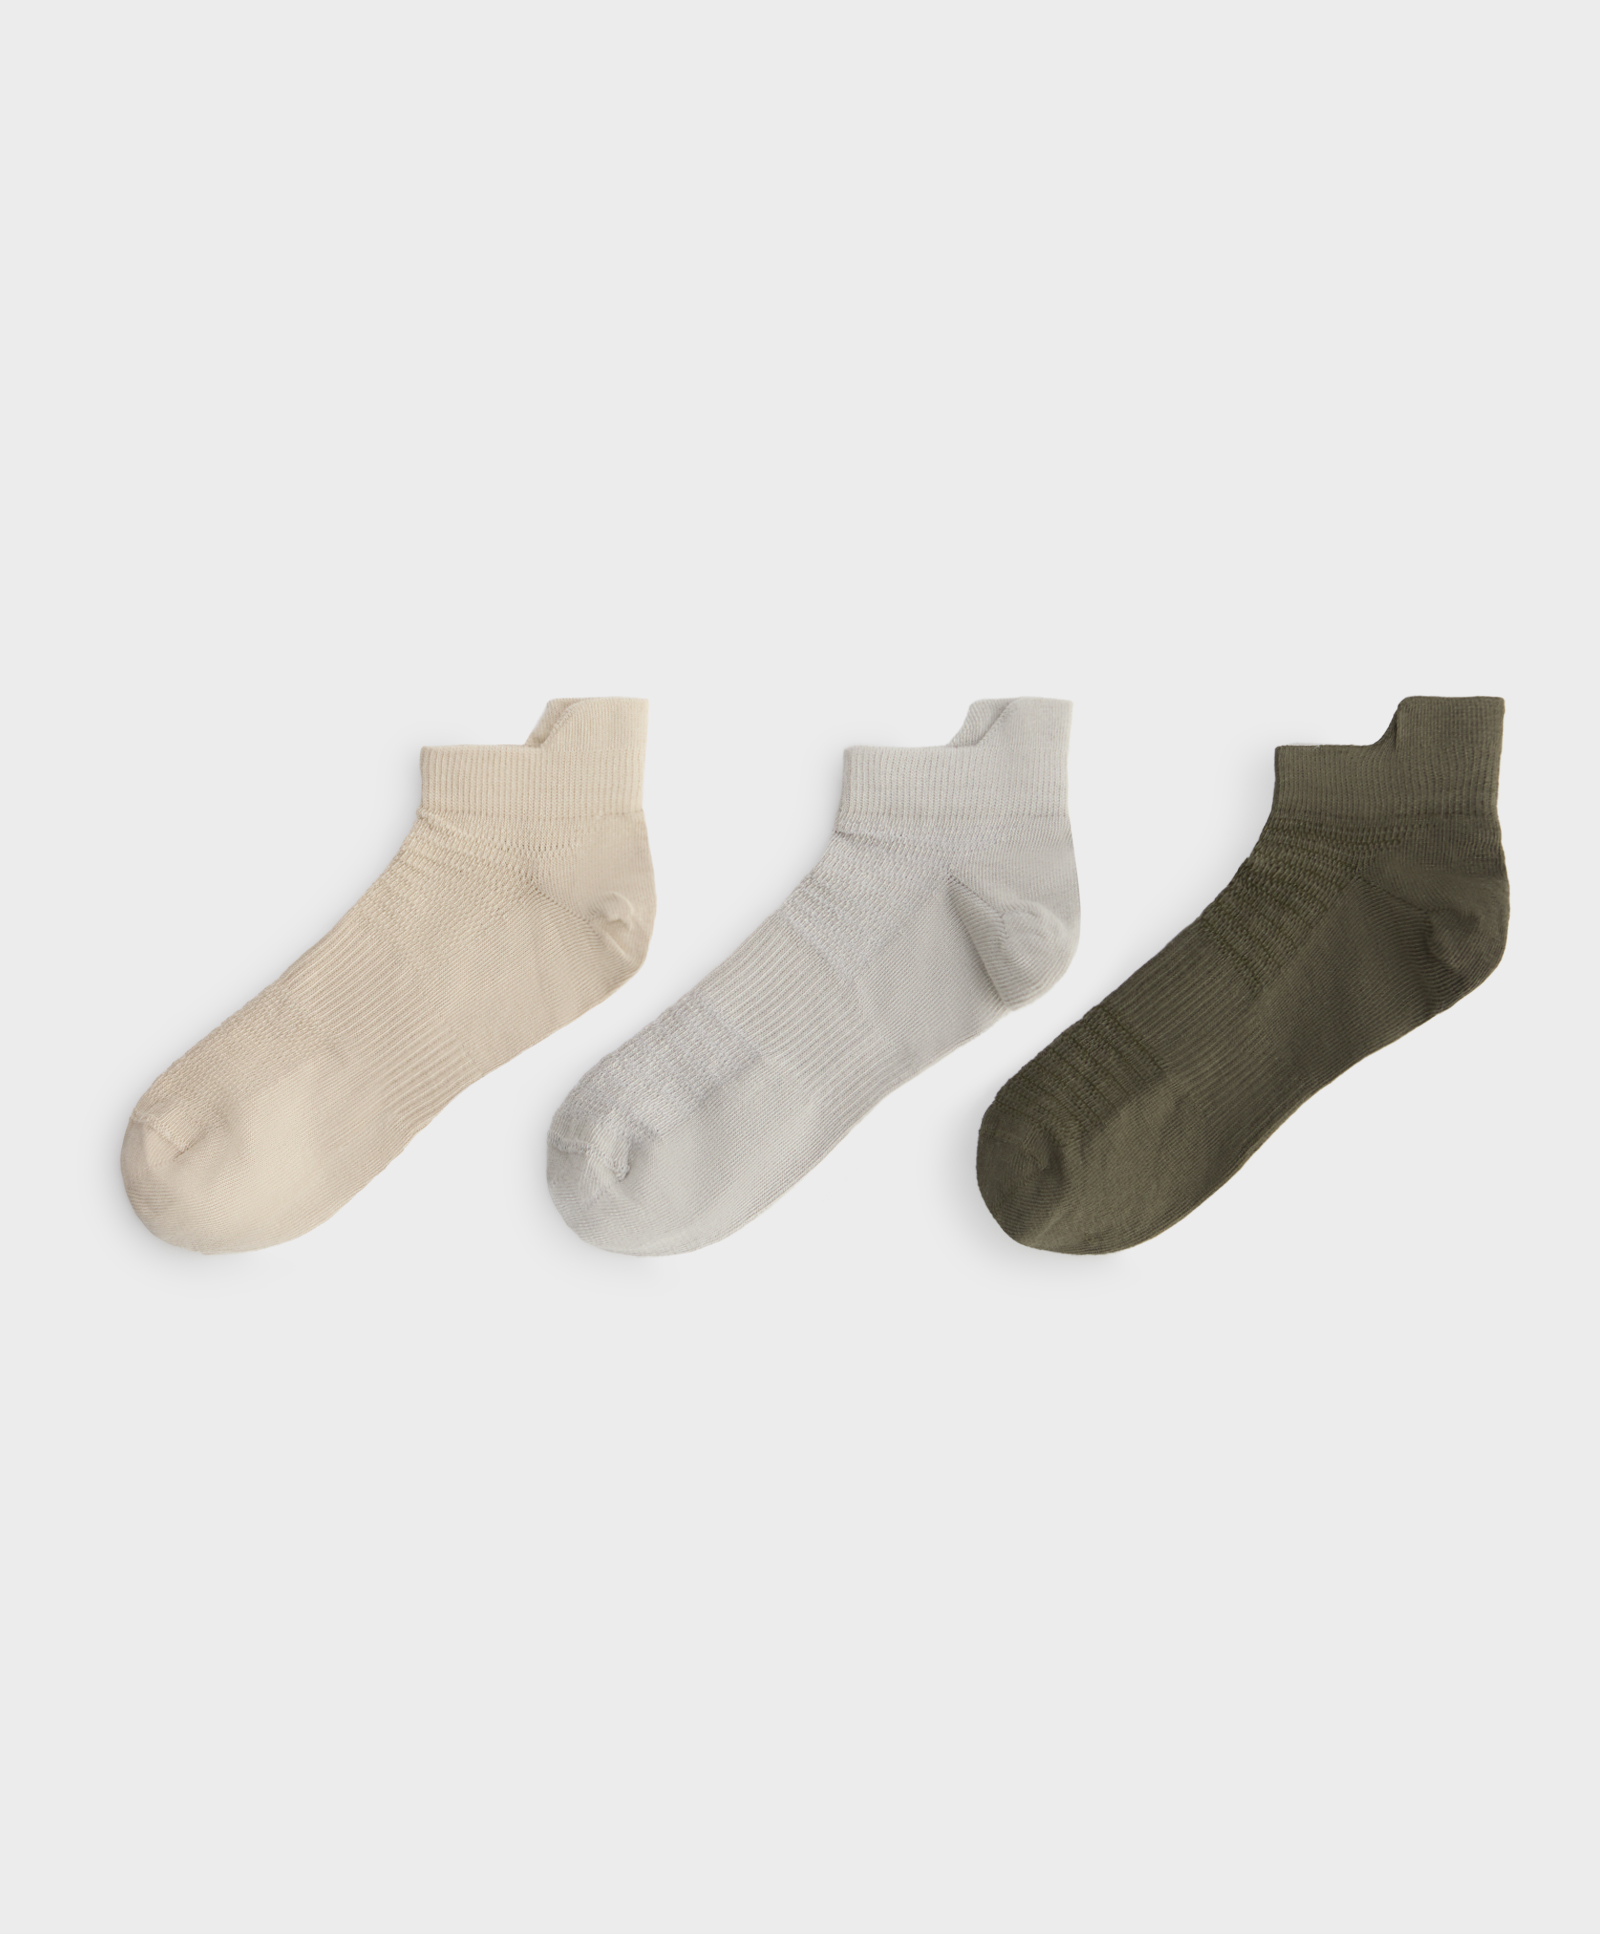 3 pares de calcetines sneaker algodón deportivos